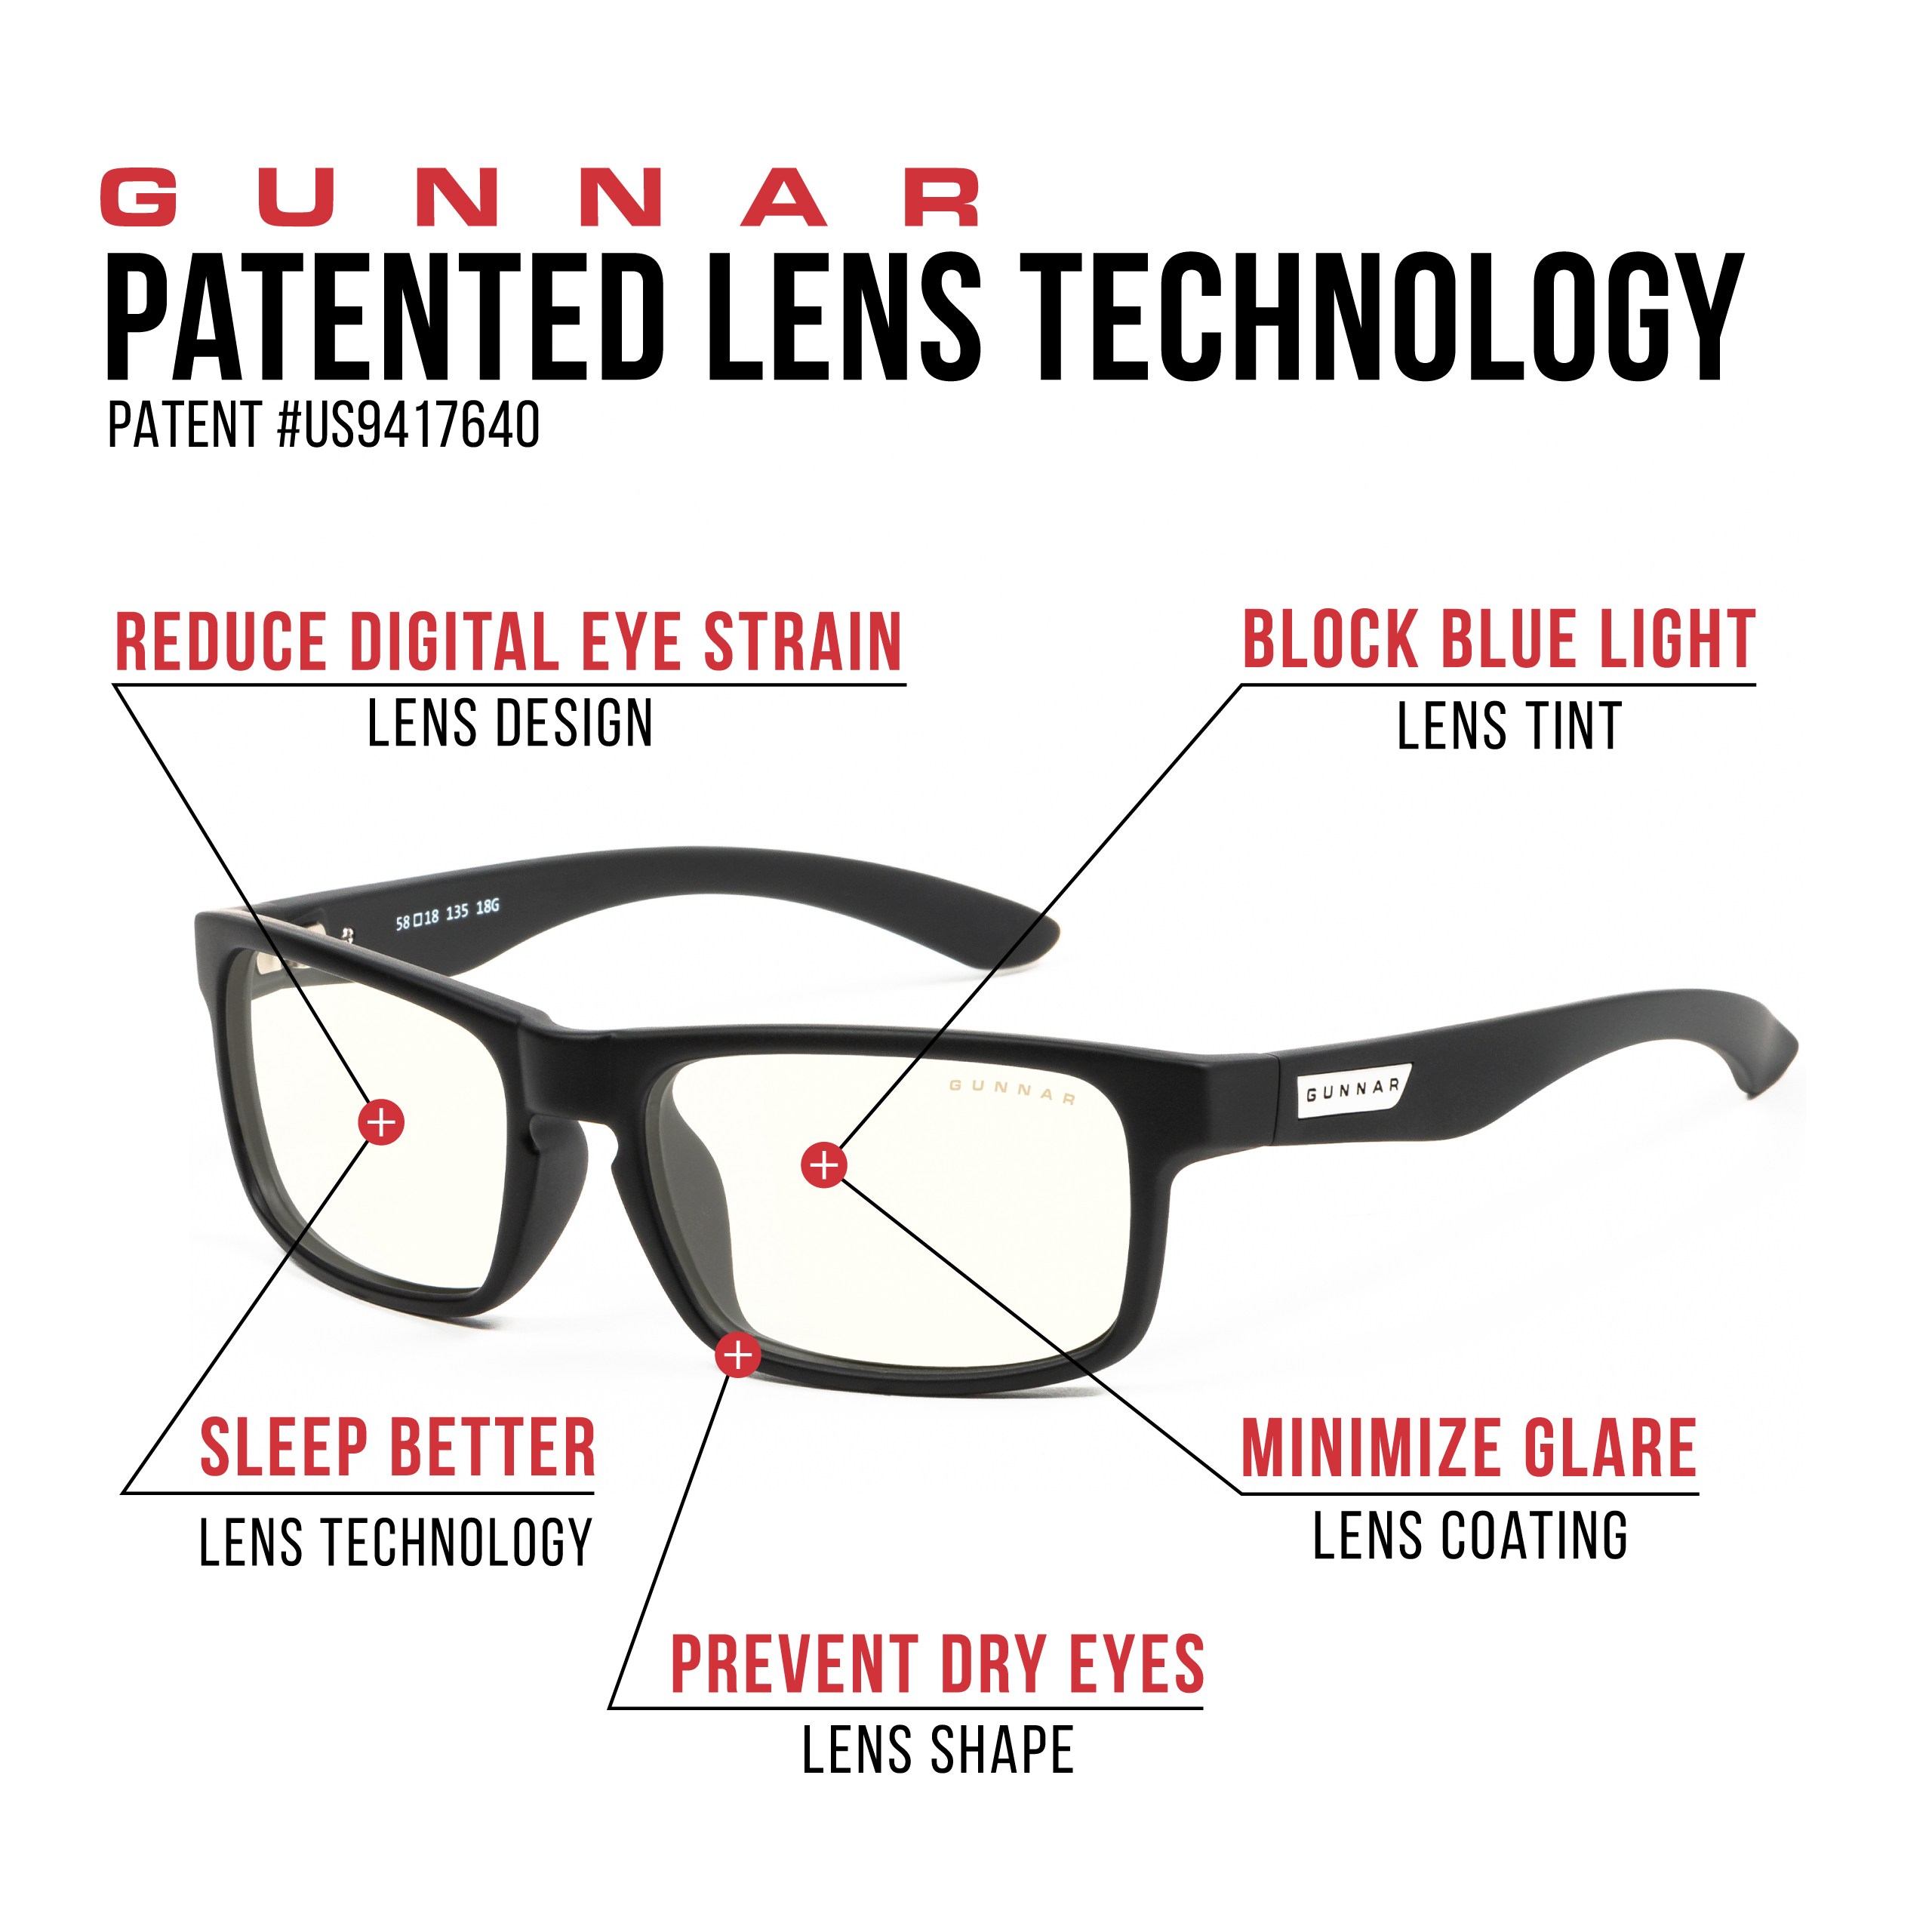 GUNNAR Enigma, Onyx Rahmen, Clear Gaming UV-Schutz, Premium, Tönung, Blaulichtfilter, Brille